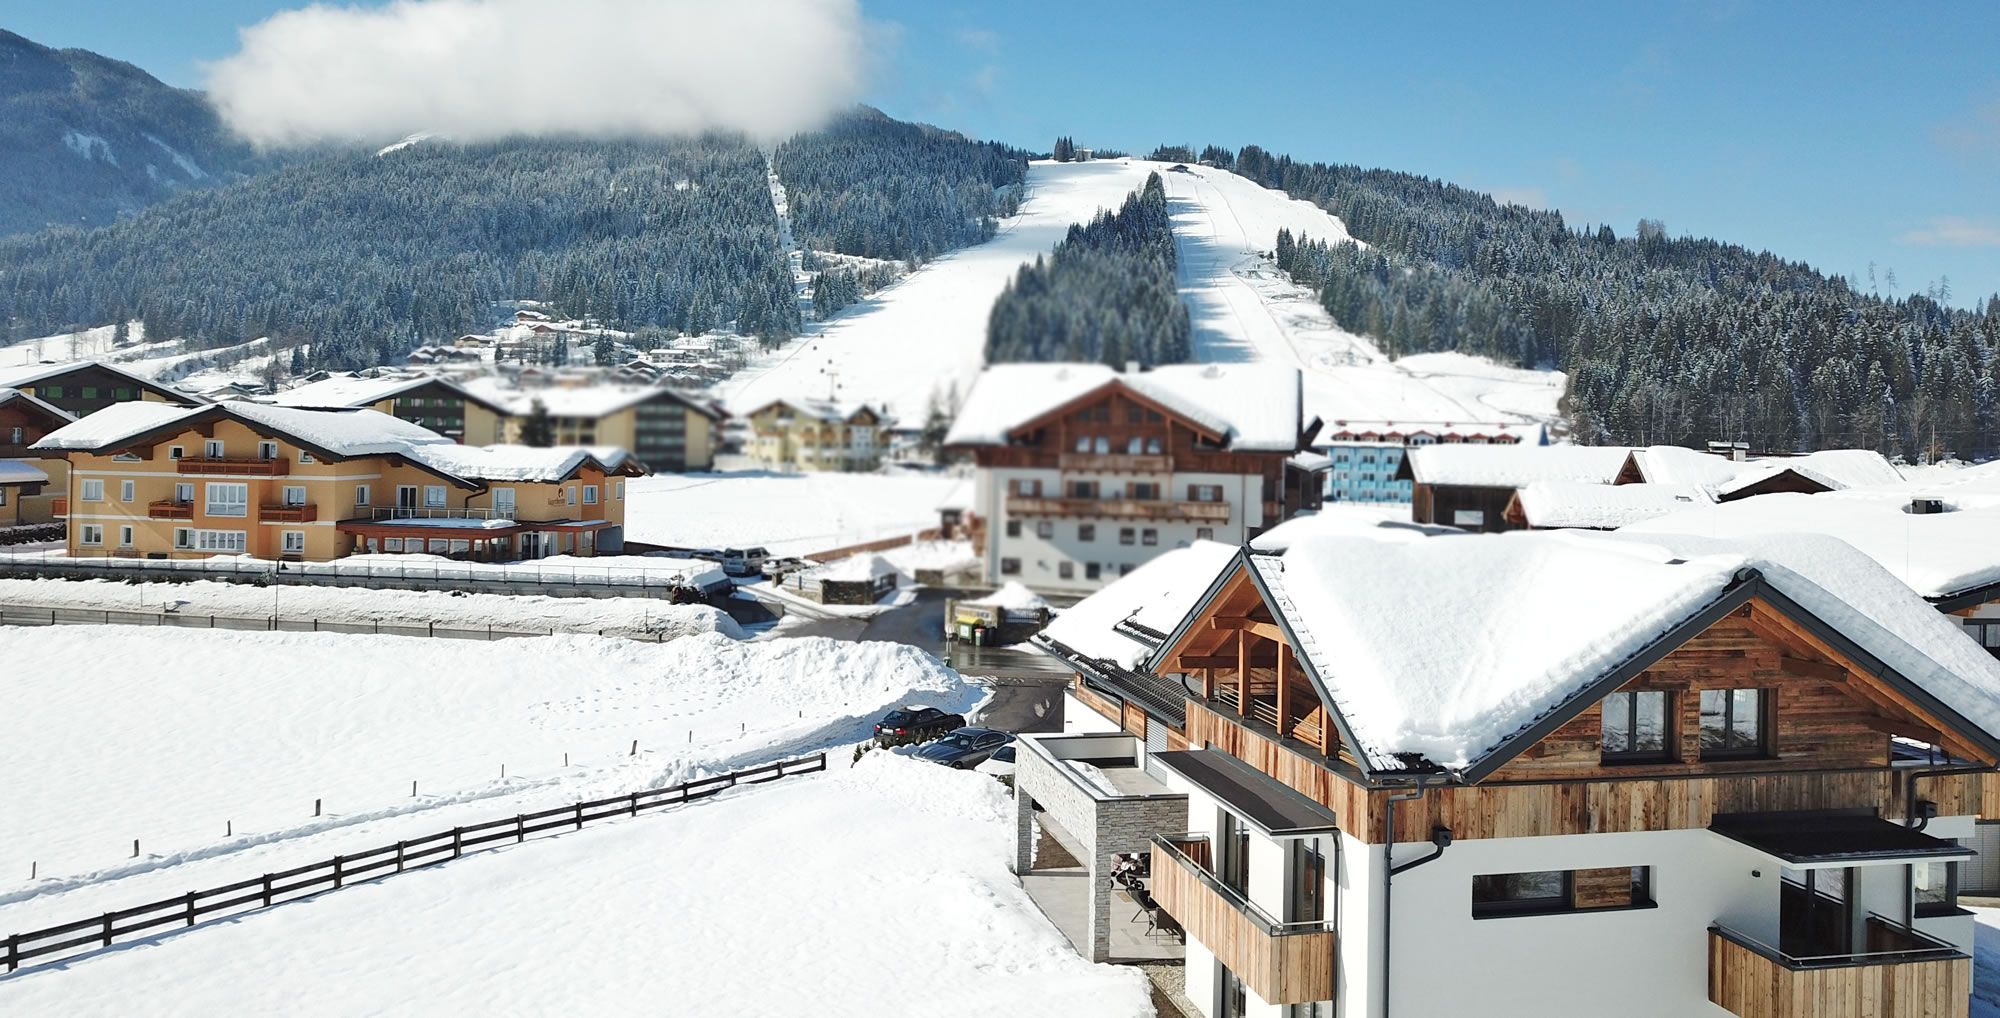 Traumhafter Winterurlaub im Snow Space Salzburg in Flachau - mitten in Ski amadé